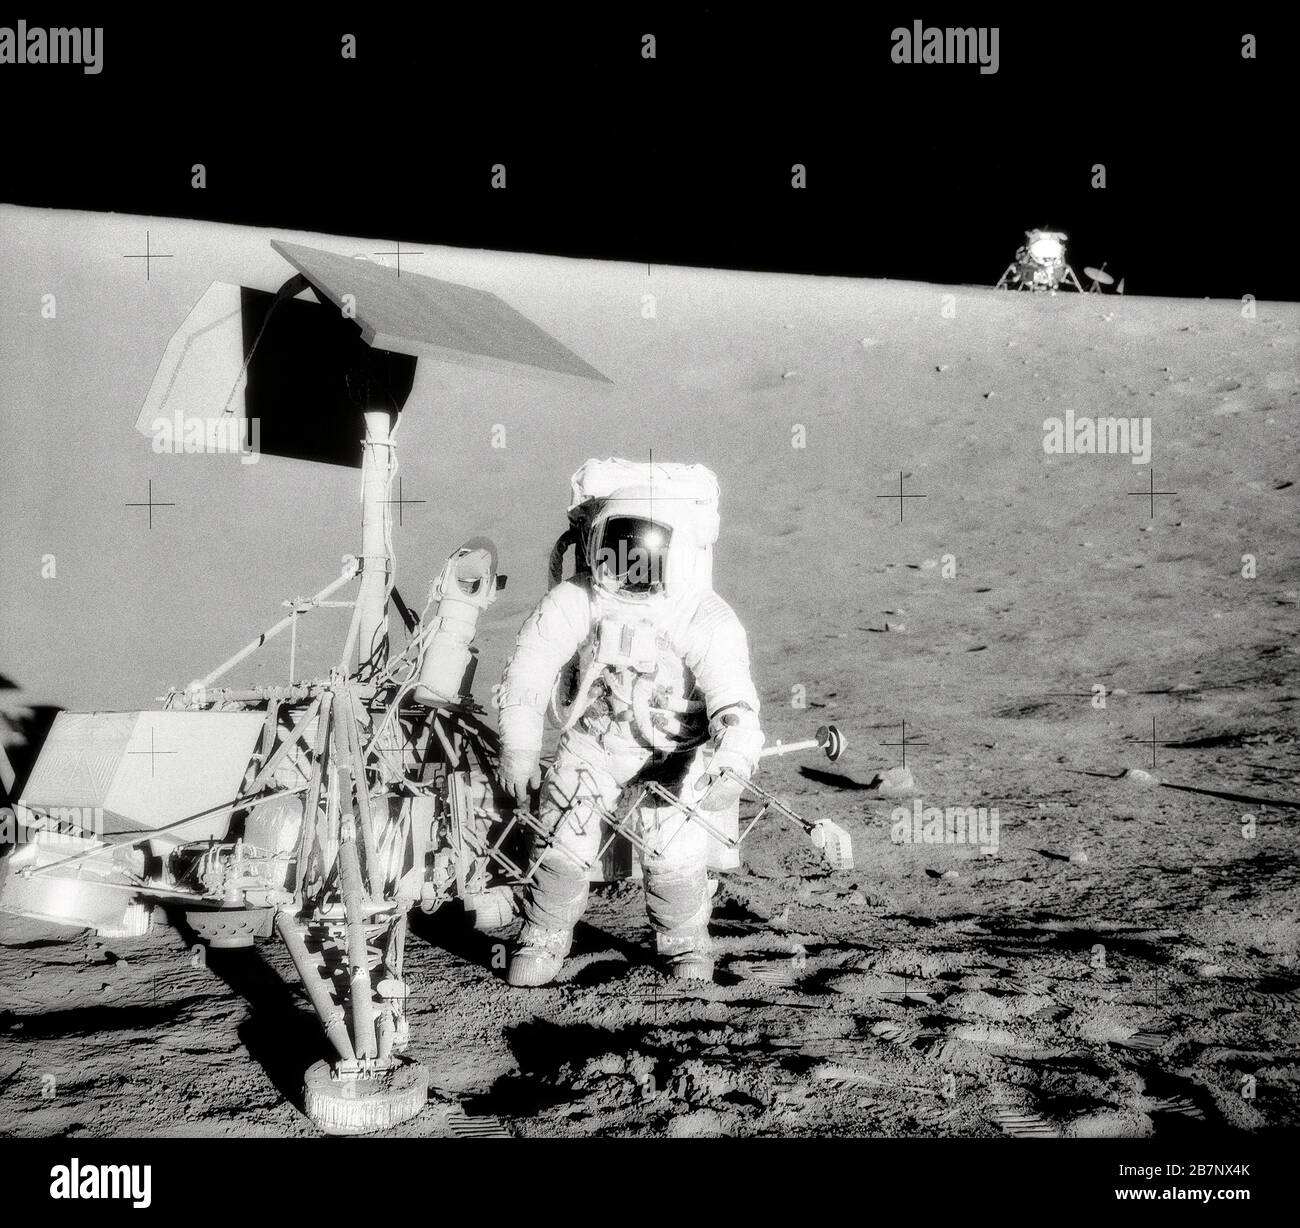 Apollo 12 - NASA, 1969. Charles Conrad Jr., Apollo 12 Commander, untersucht die unbemannte Raumsonde Surveyor III während der zweiten Extravehikelaktivität (EVA-2). Das Lunar Module (LM) "Intrepid" befindet sich im rechten Hintergrund. Dieses Bild wurde von dem Astronauten Alan L. Bean, Lunar Module Pilot, aufgenommen. Die "Intrepid" landete auf dem Ozean der Stürme des Mondes nur 600 Fuß von Surveyor III. Entfernt Stockfoto